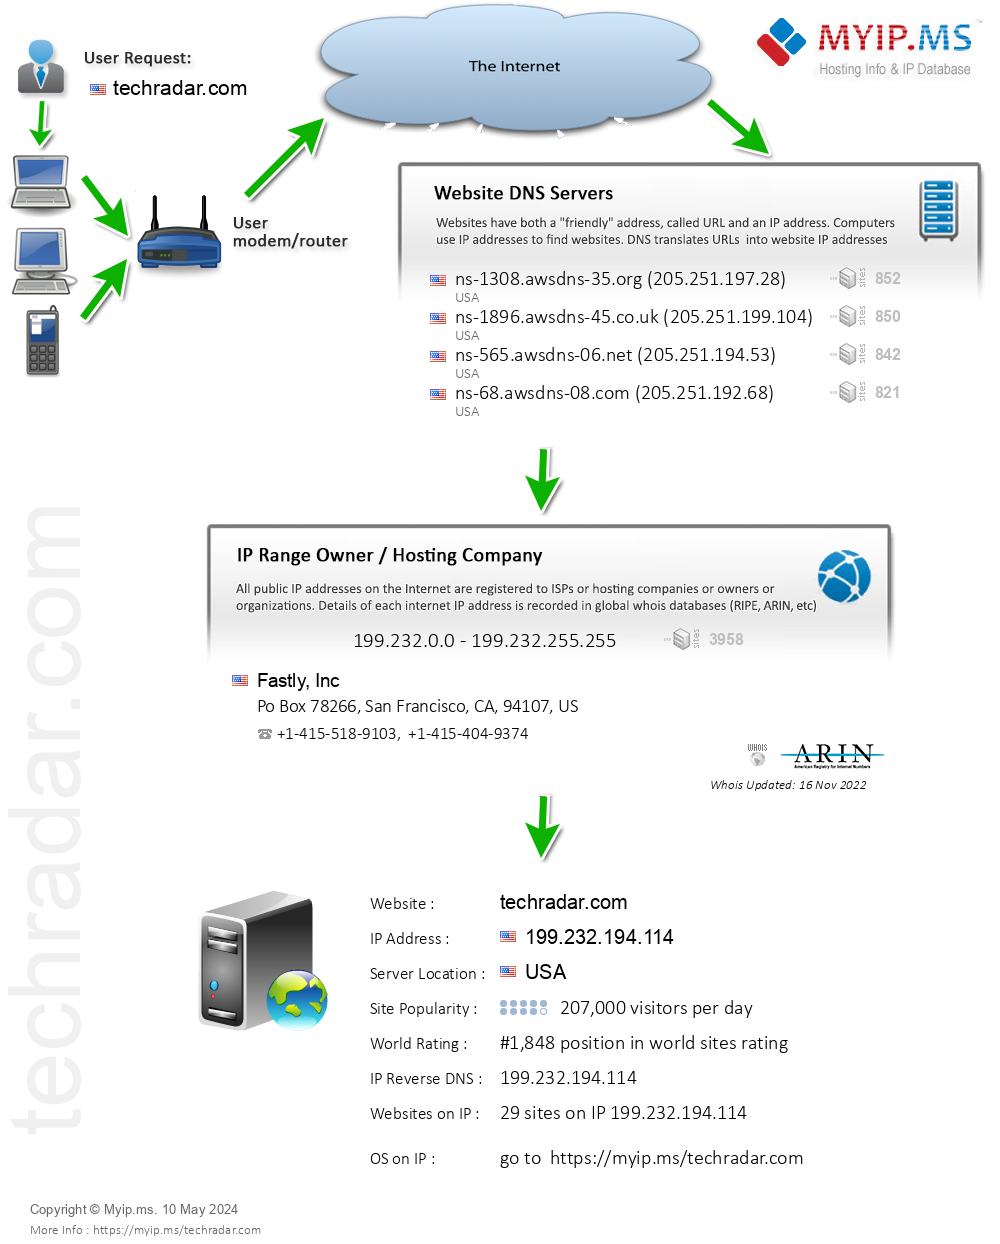 Techradar.com - Website Hosting Visual IP Diagram